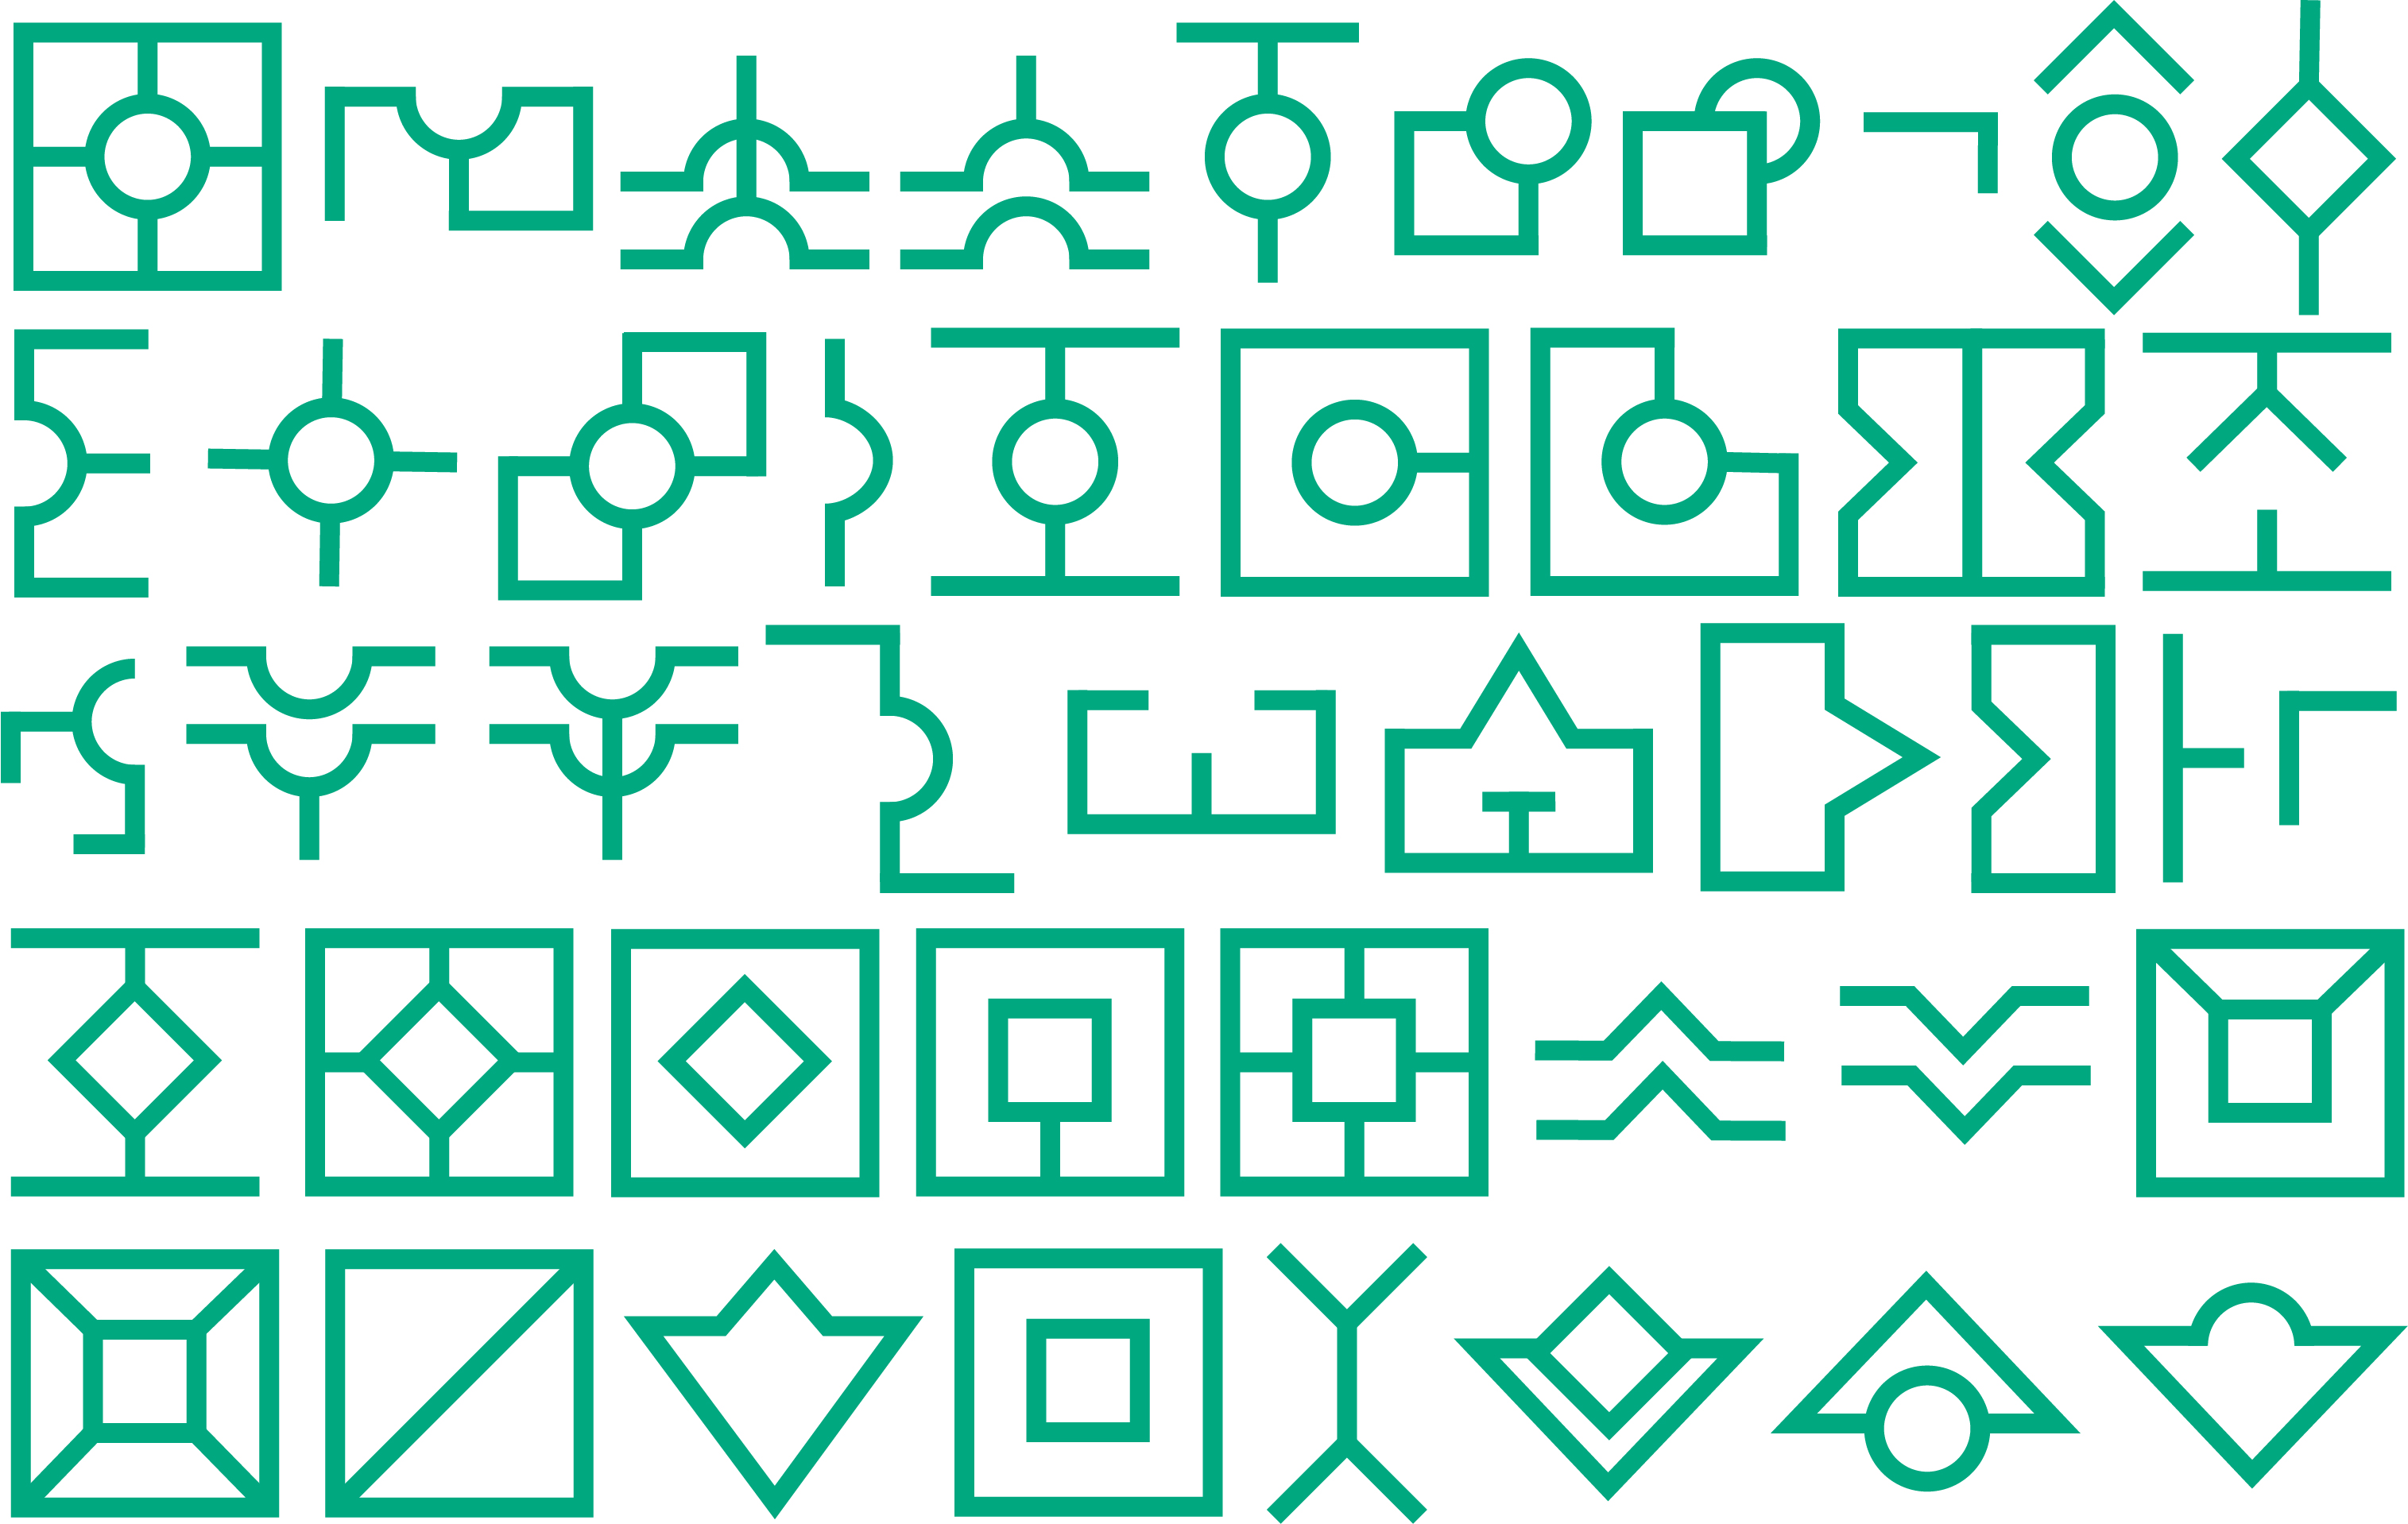 Concept of Language Symbols